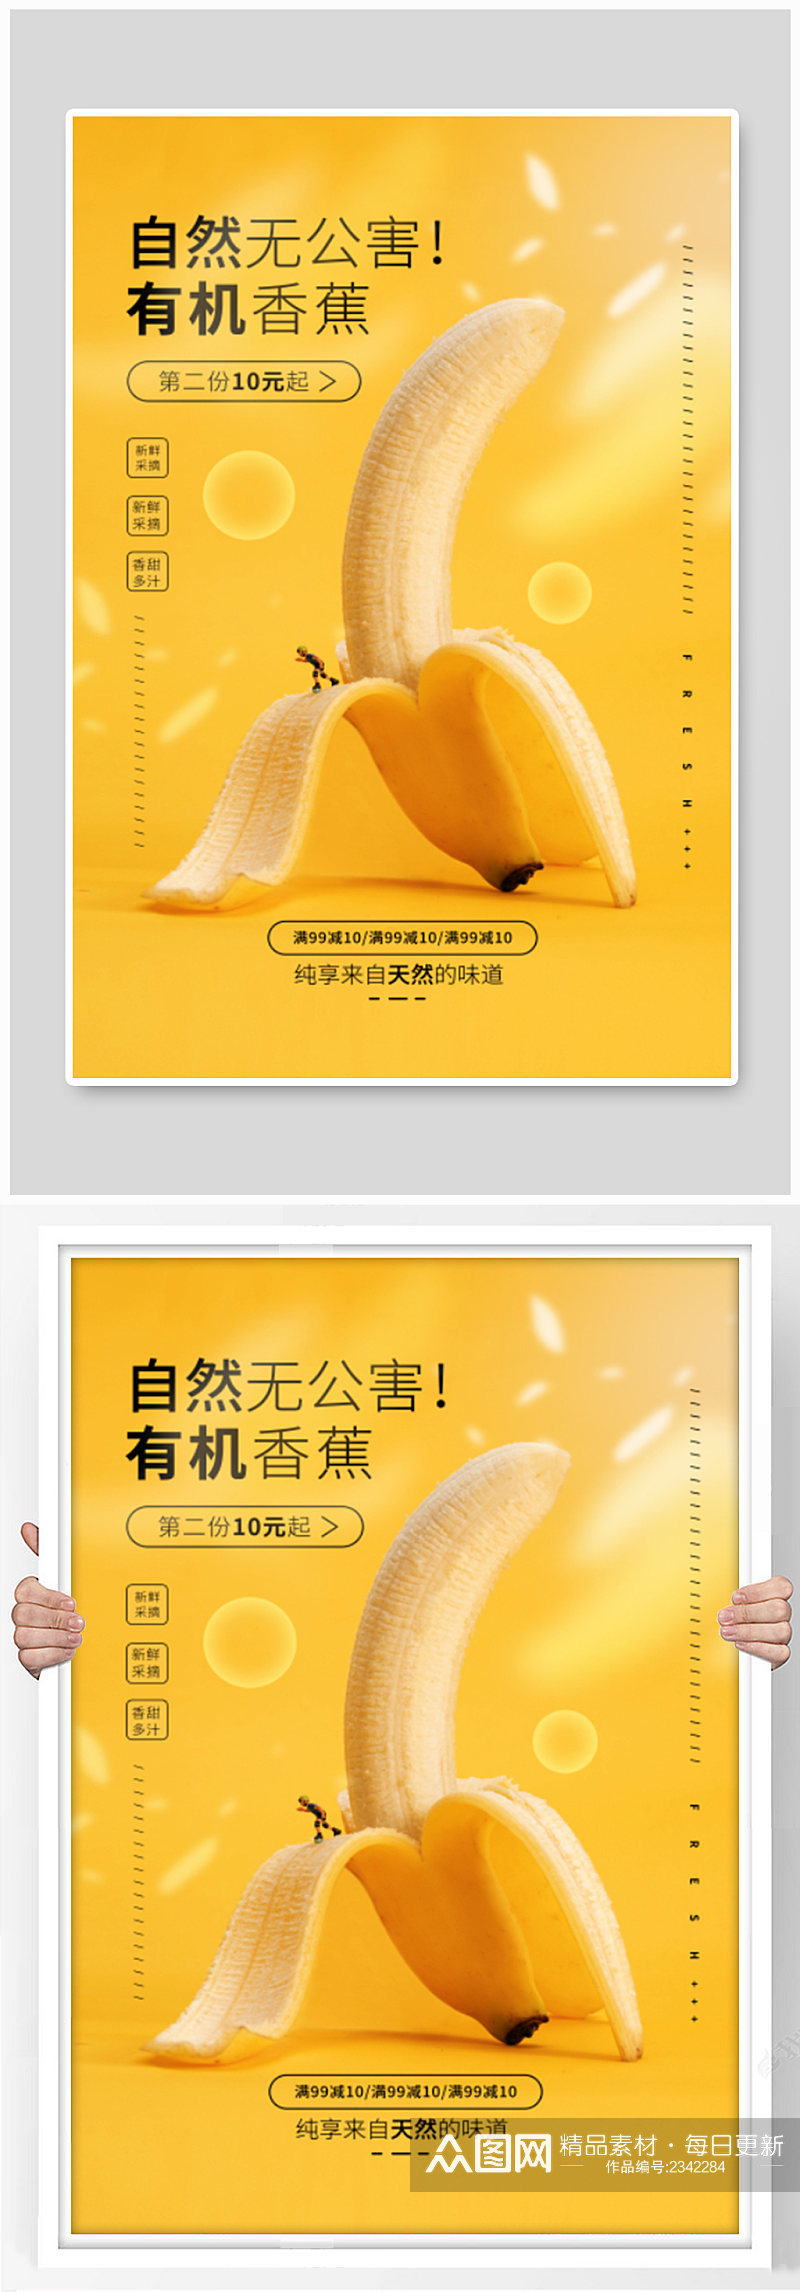 自然有机香蕉海报素材